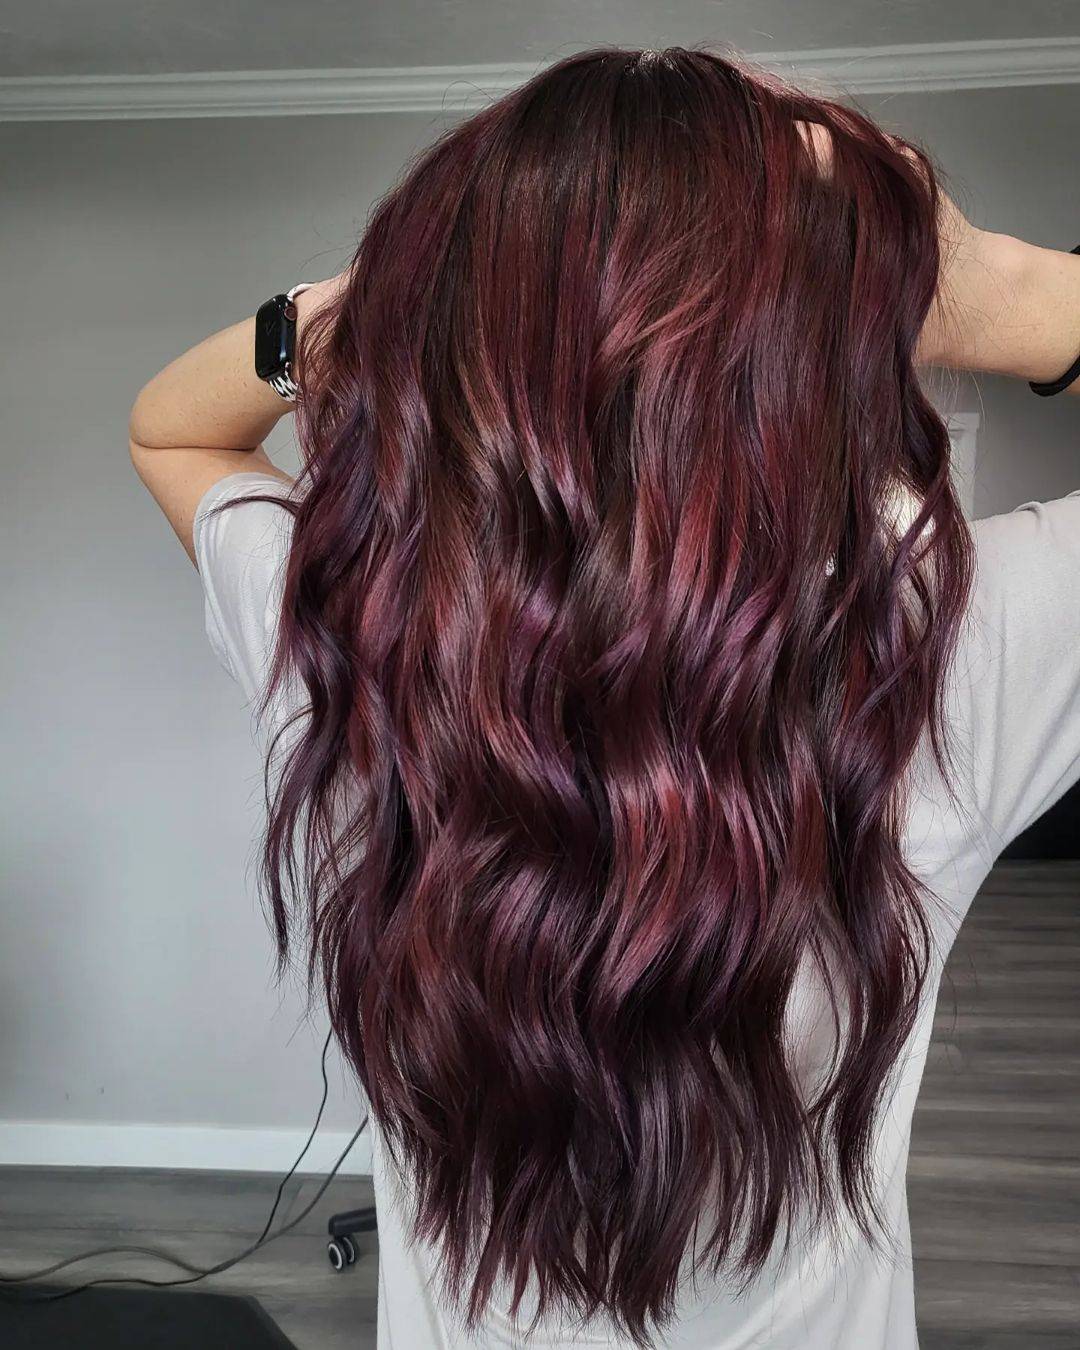 Burgundy hair color 299 burgundy hair color | burgundy hair color for women | burgundy hair color highlights Burgundy Hair Color